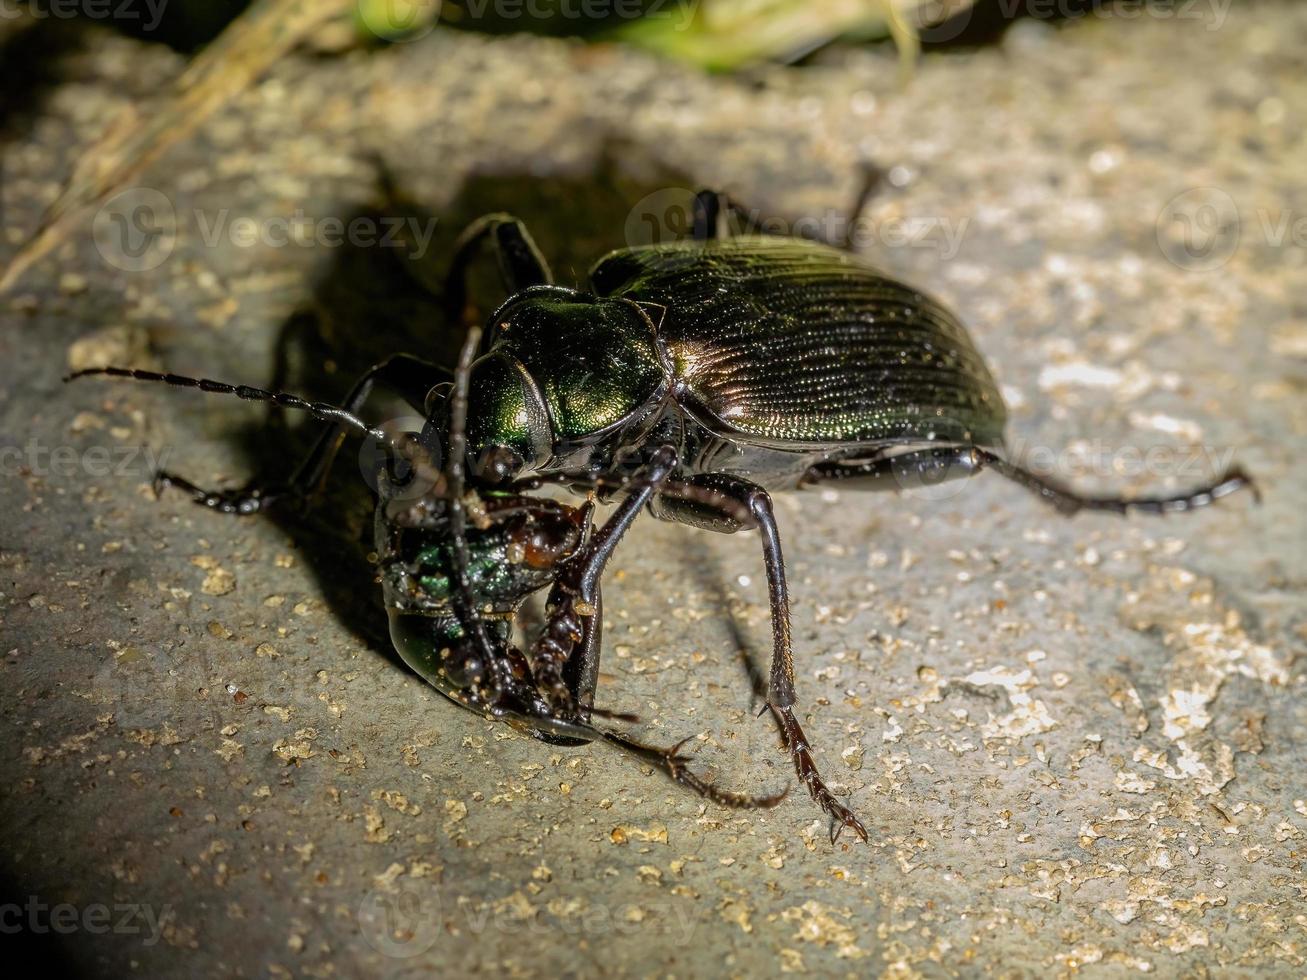 scarabée chasseur de chenille adulte photo